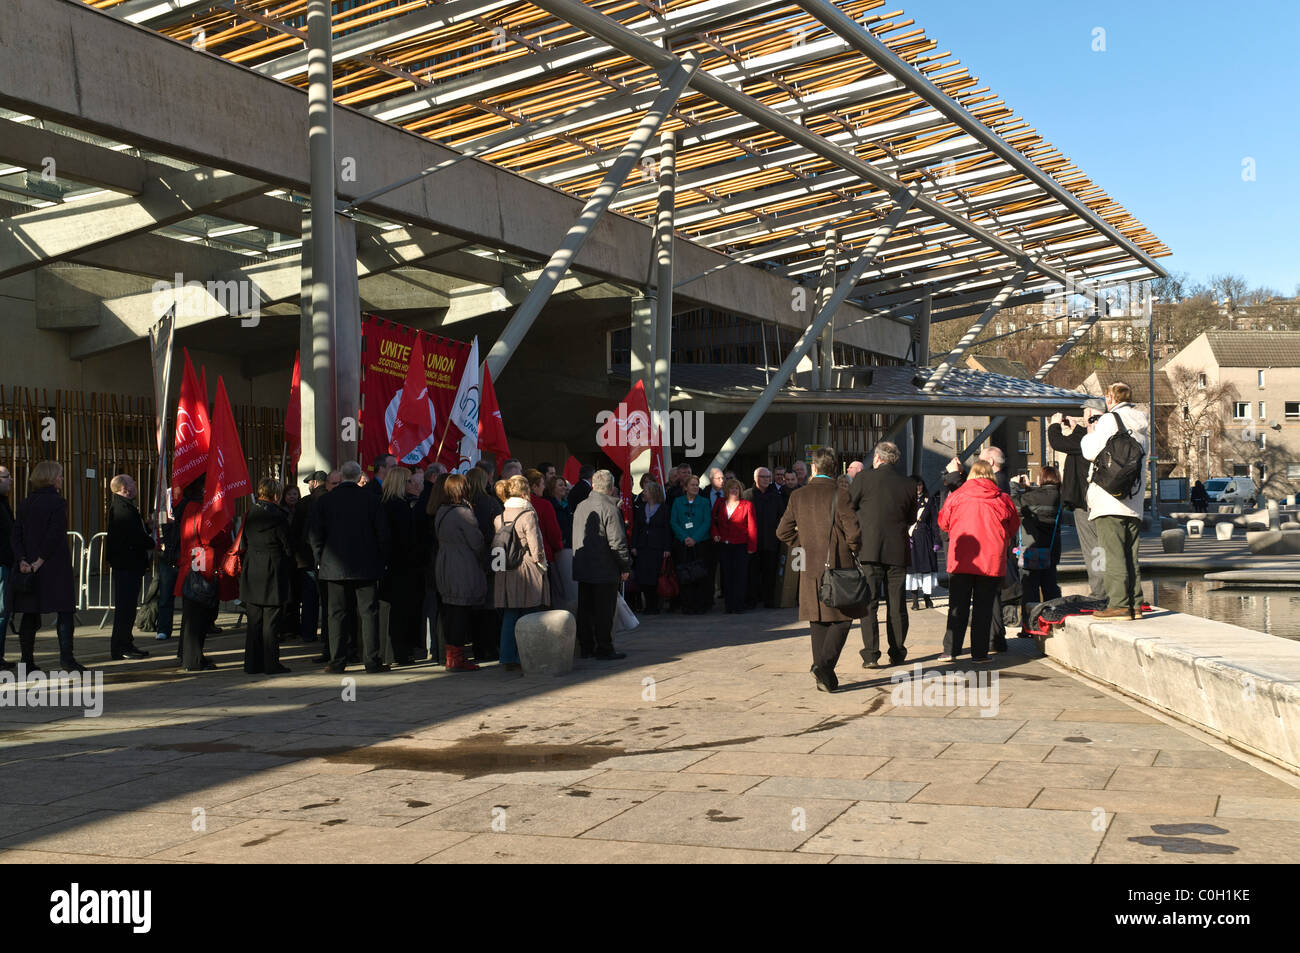 Le Parlement écossais EDINBURGH HOLYROOD dh manifestants se rassemblent à l'extérieur du bâtiment du Parlement européen union européenne protester contre l'Ecosse Banque D'Images